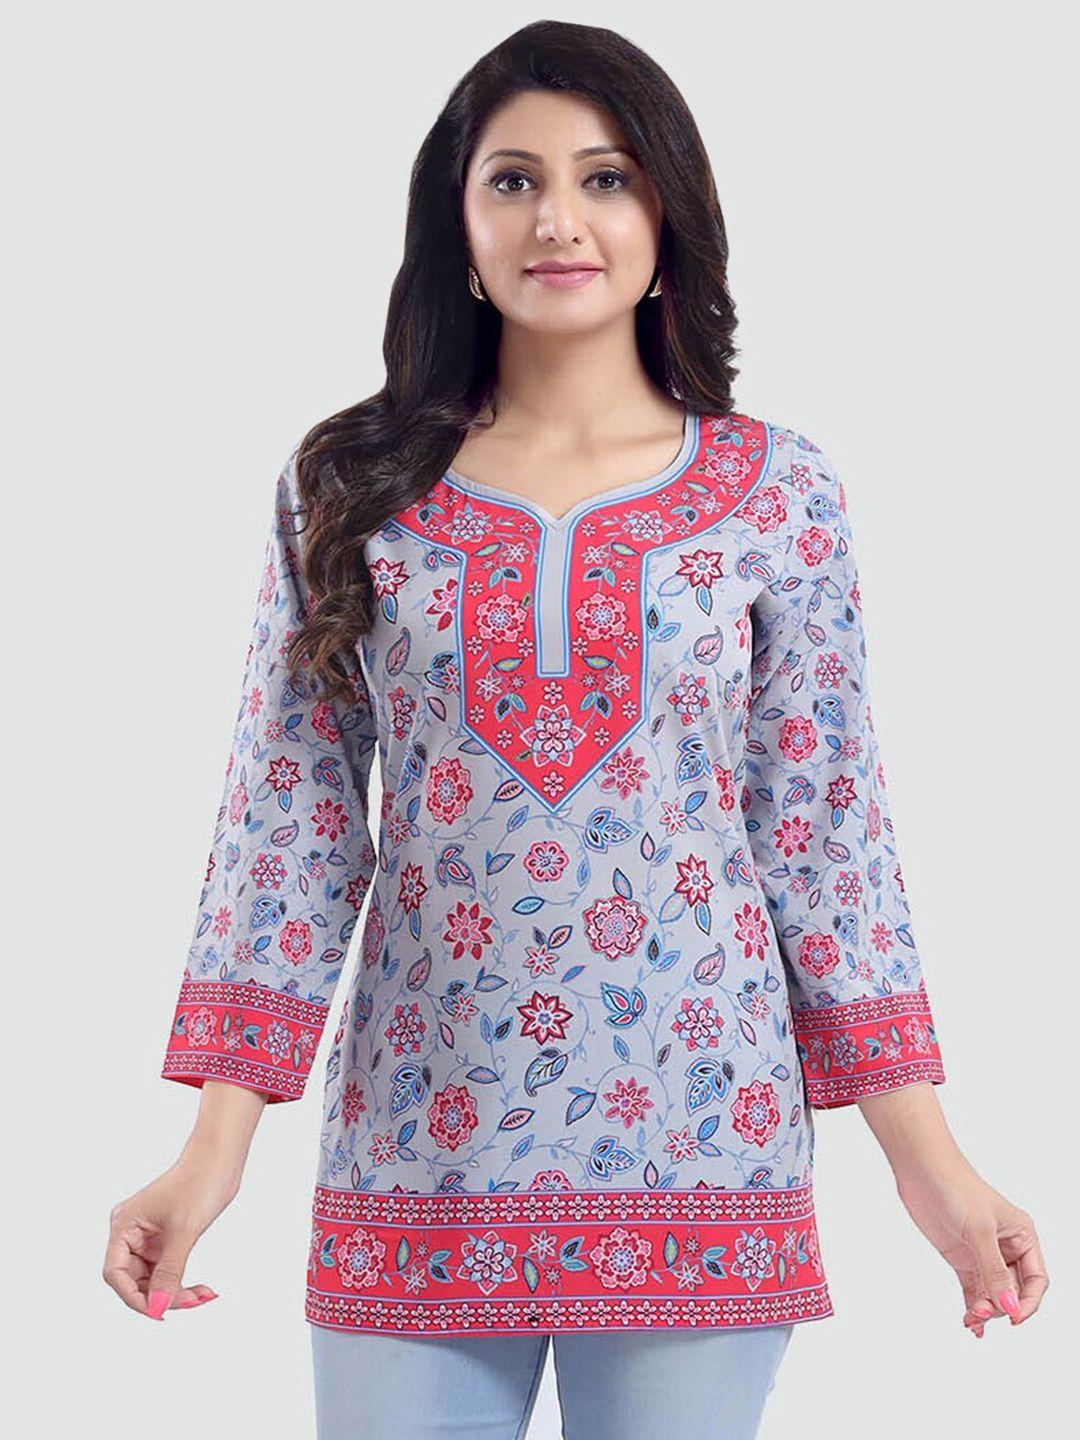 saree swarg grey & pink ethnic motifs printed v-neck kurti